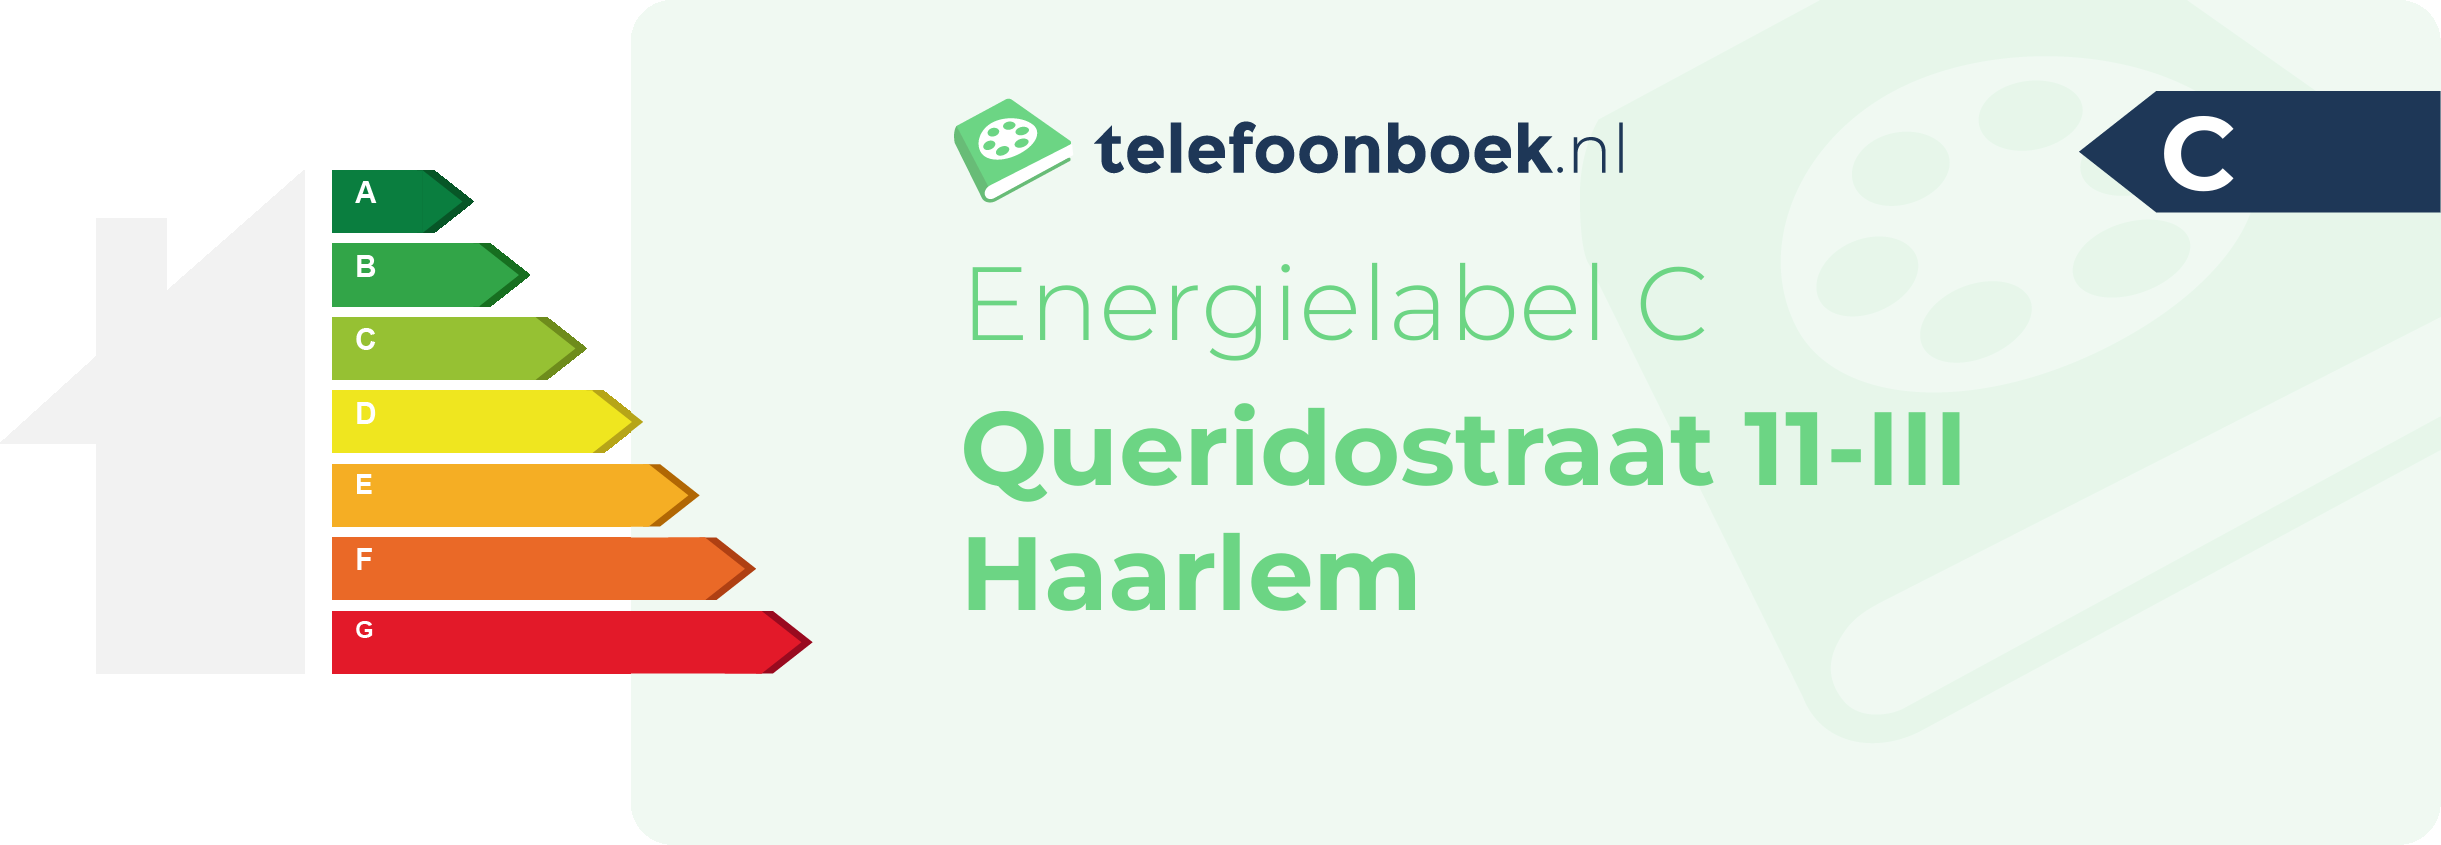 Energielabel Queridostraat 11-III Haarlem